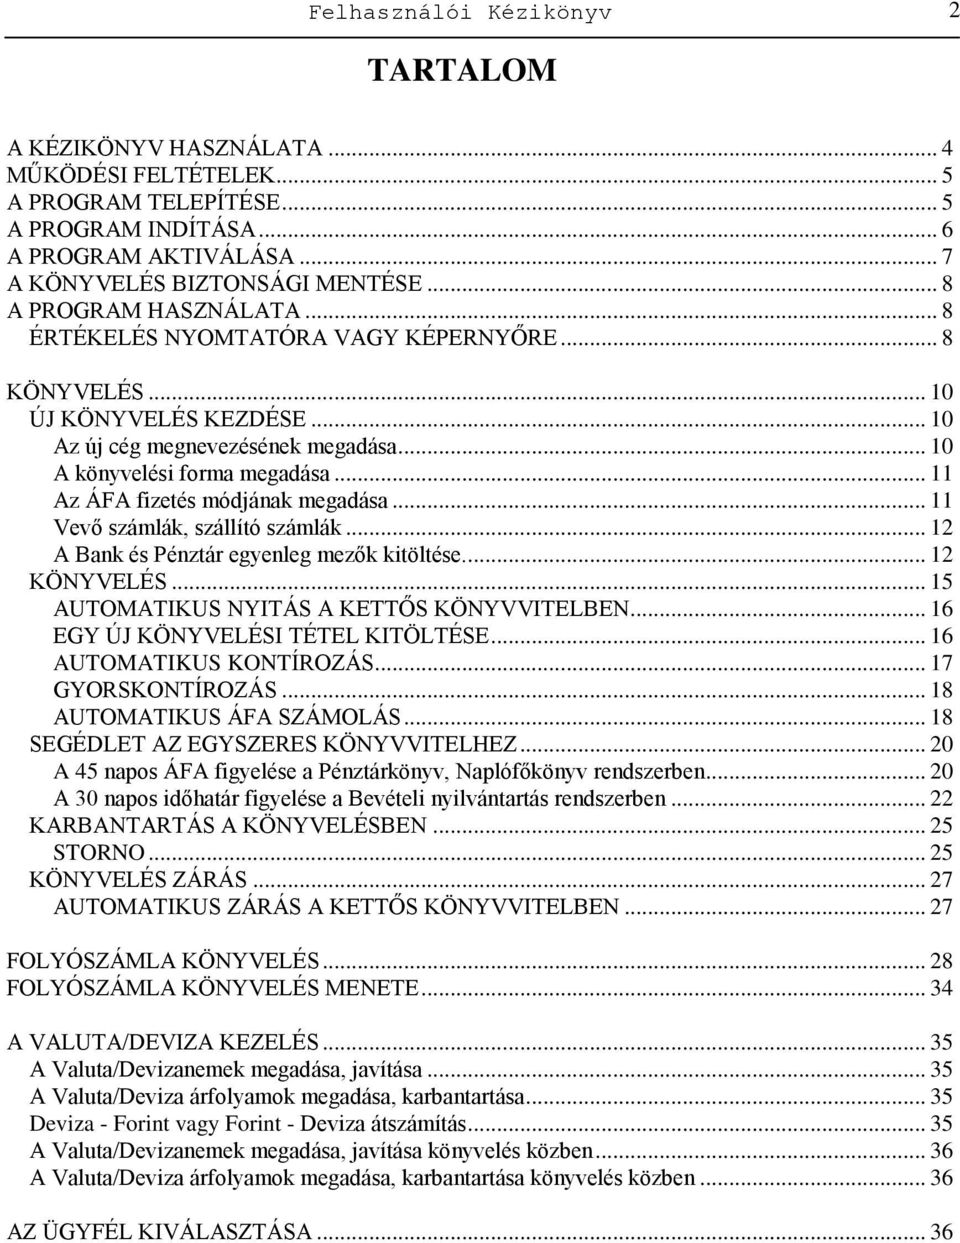 ElitCONTO 2015 Felhasználói Kézikönyv ElitCONTO könyvelő rendszerhez (c) Niara  SOFTWARE Niara Kft. - PDF Free Download